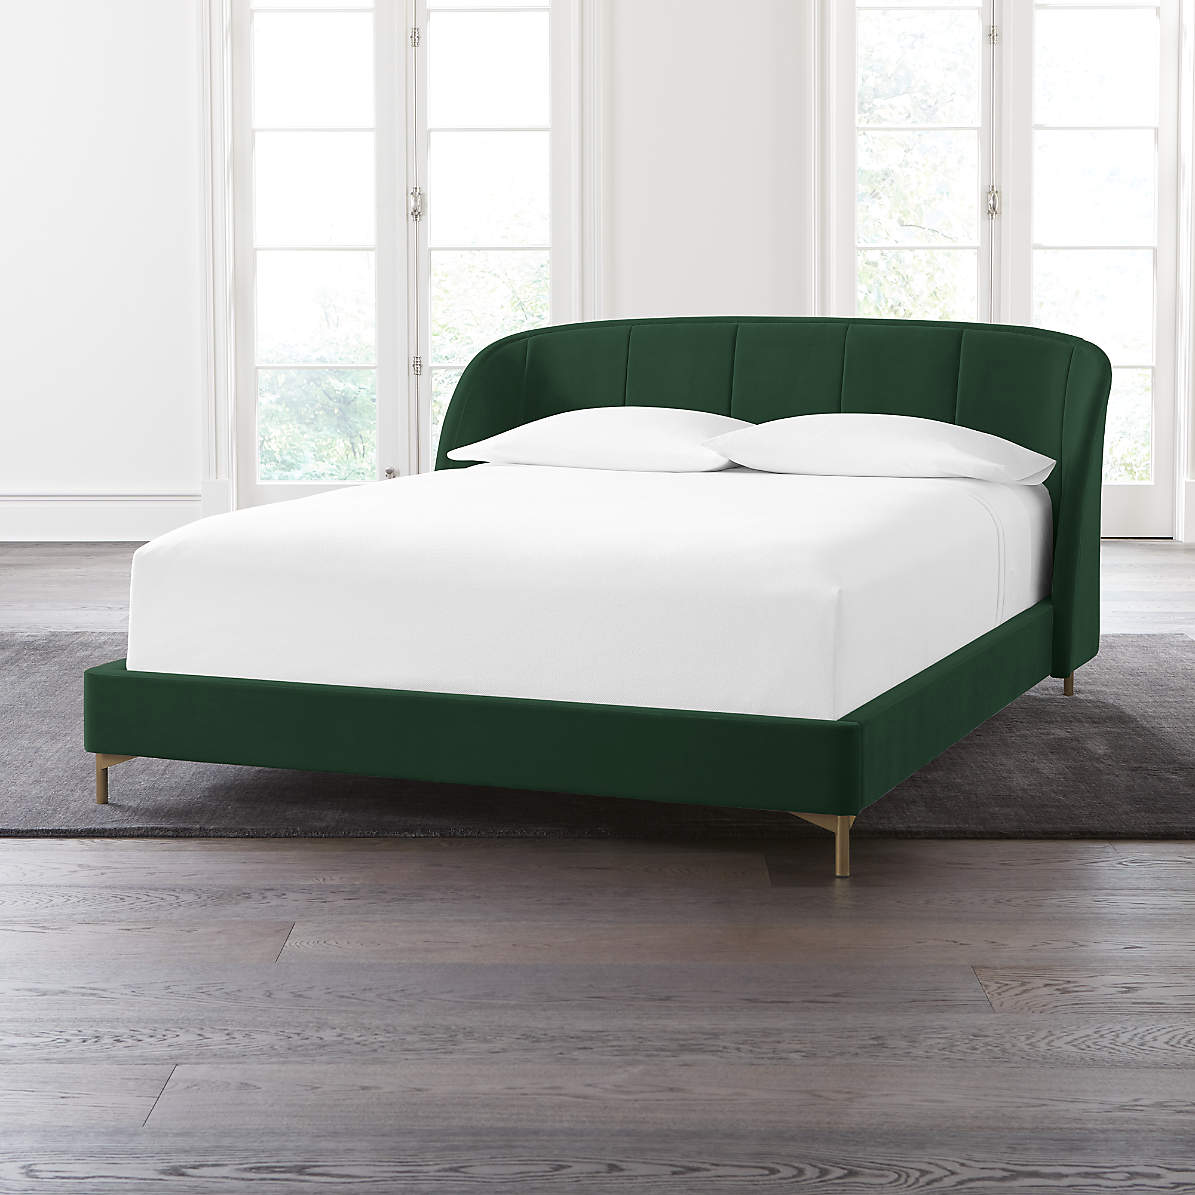 Ava Emerald Bed Crate And Barrel